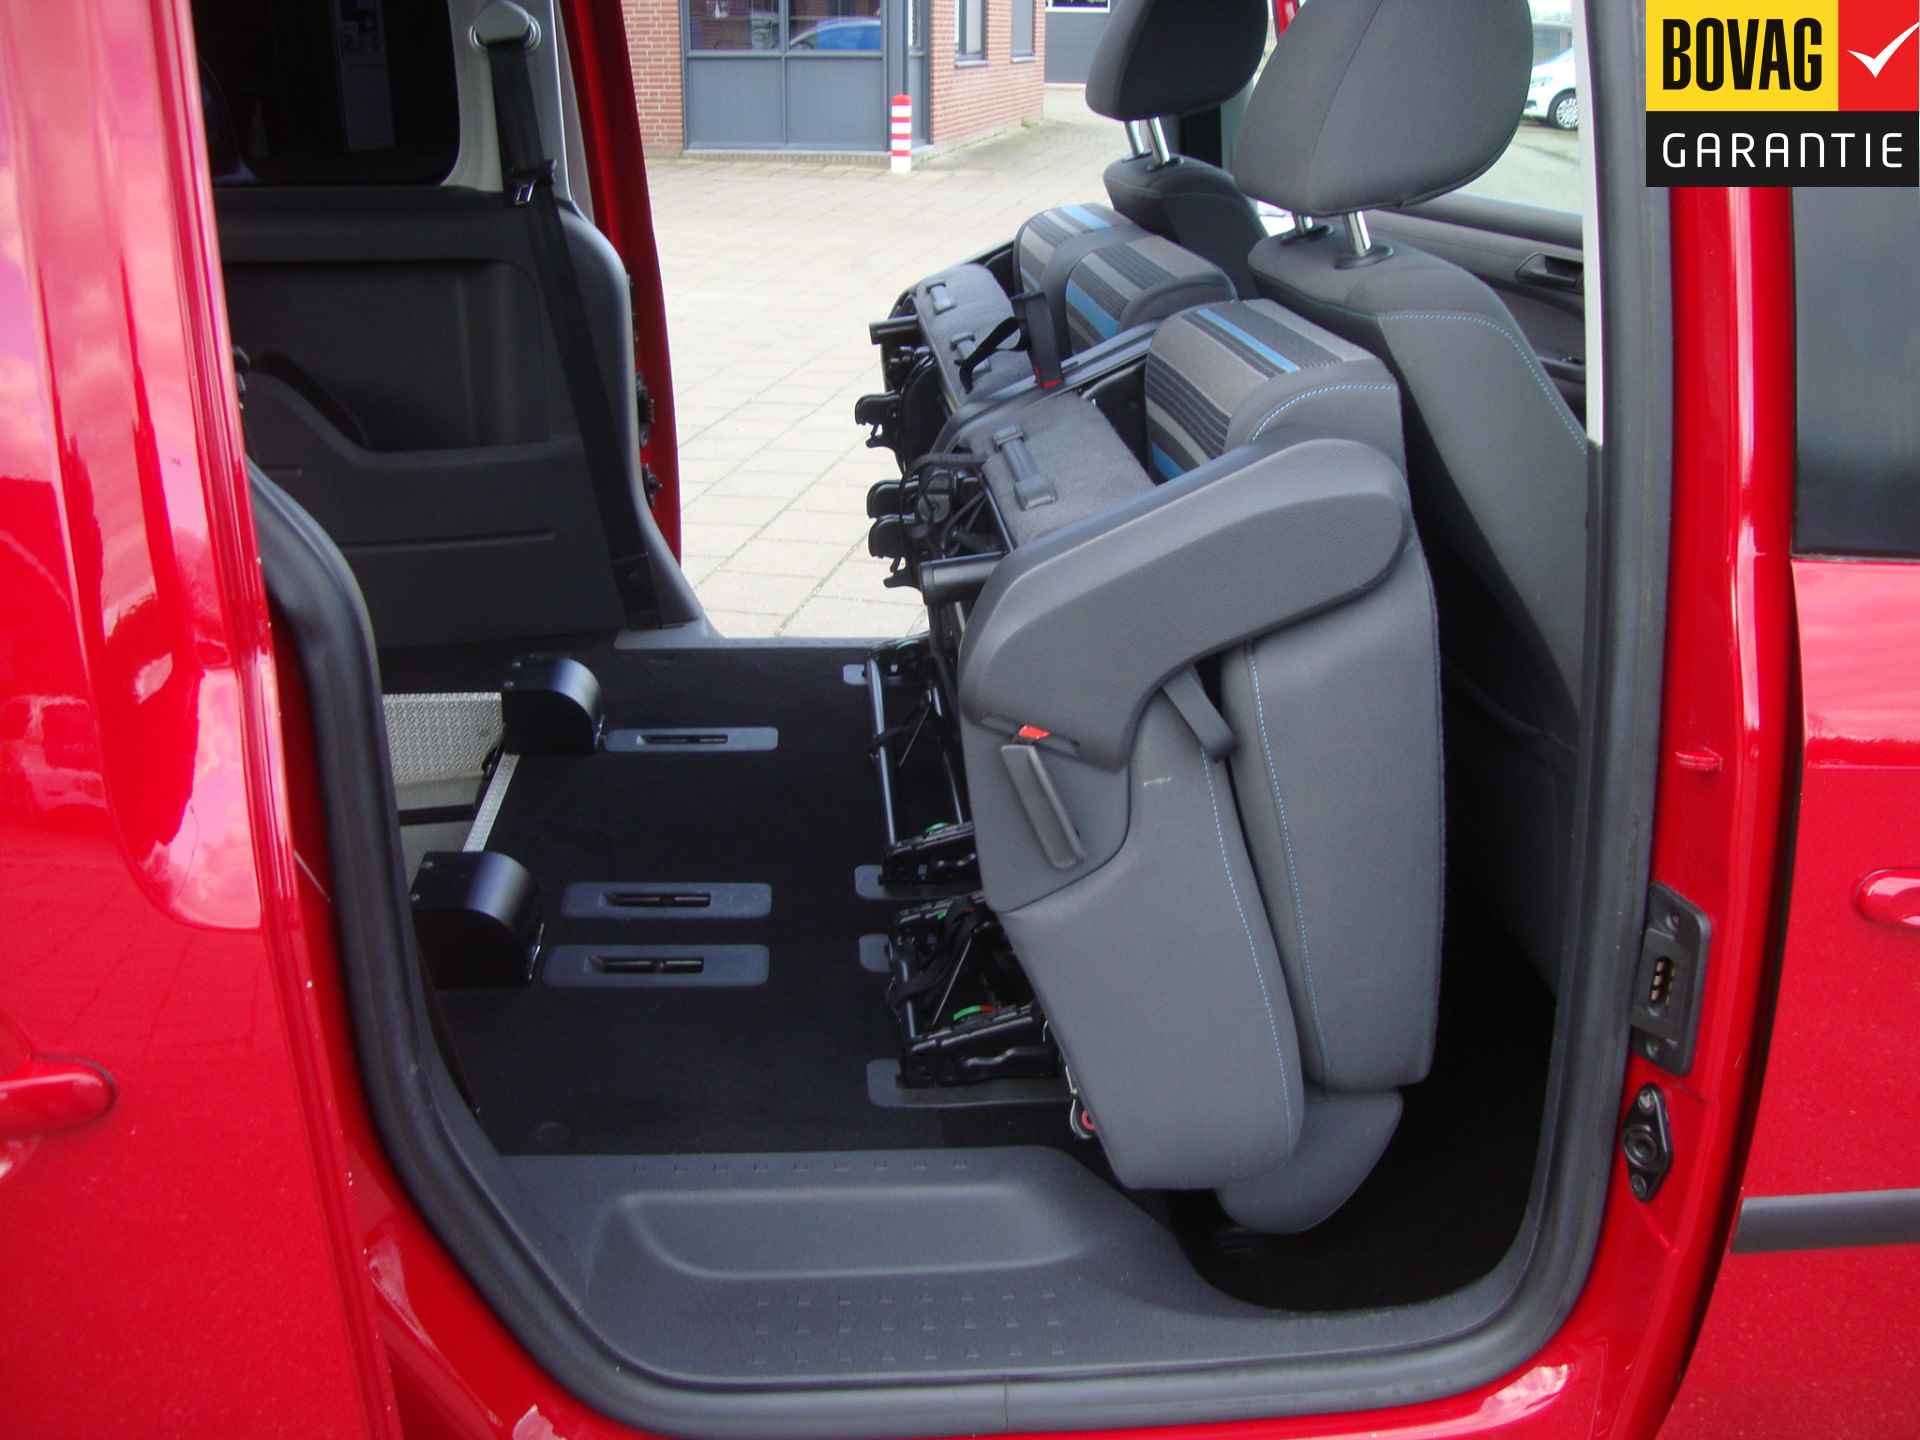 Volkswagen Caddy Maxi 1.2 TSI Trendline Rolstoel / Invalide , 5 pers + 1 rolstoelplaats( Airco,Cruise Control) RIJKLAARPRIJS! - 42/47